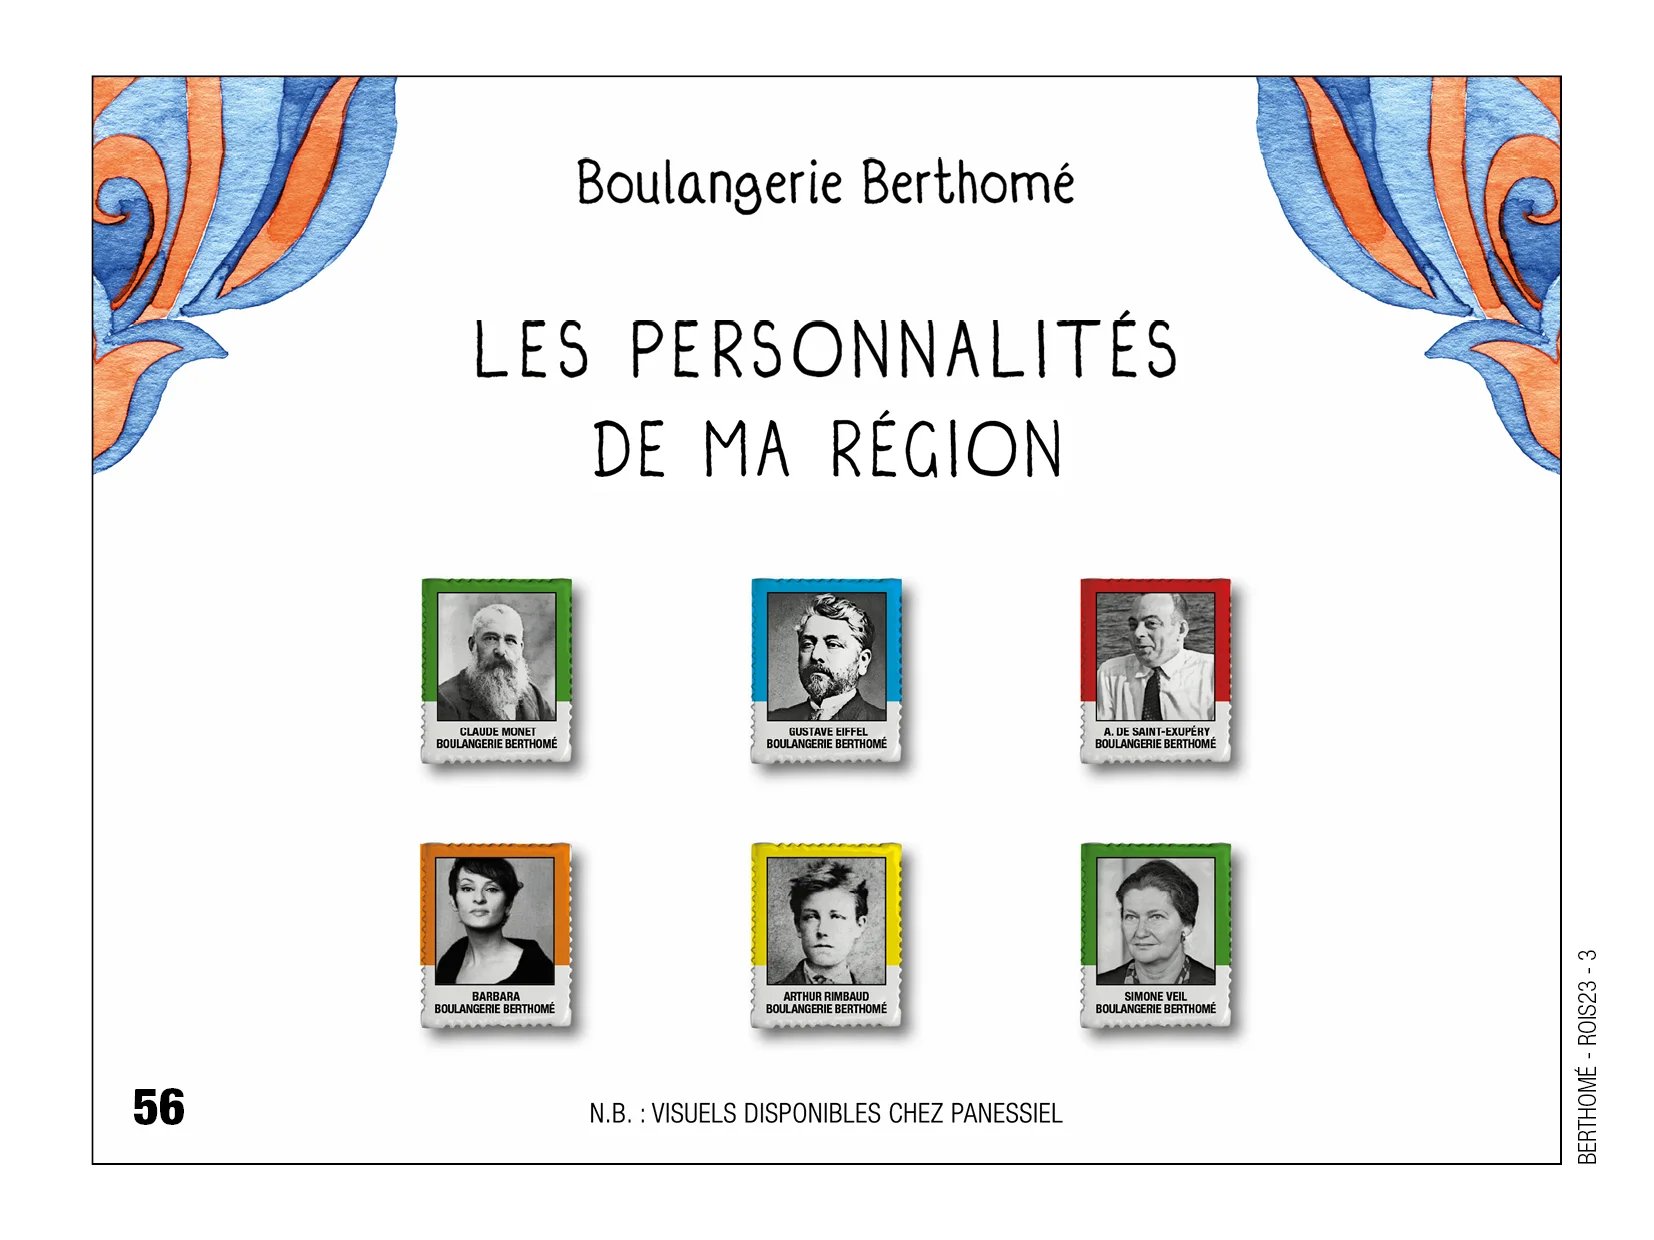 Fèves personnalisées de personnalités de la région réalisé par la boulangerie Berthome